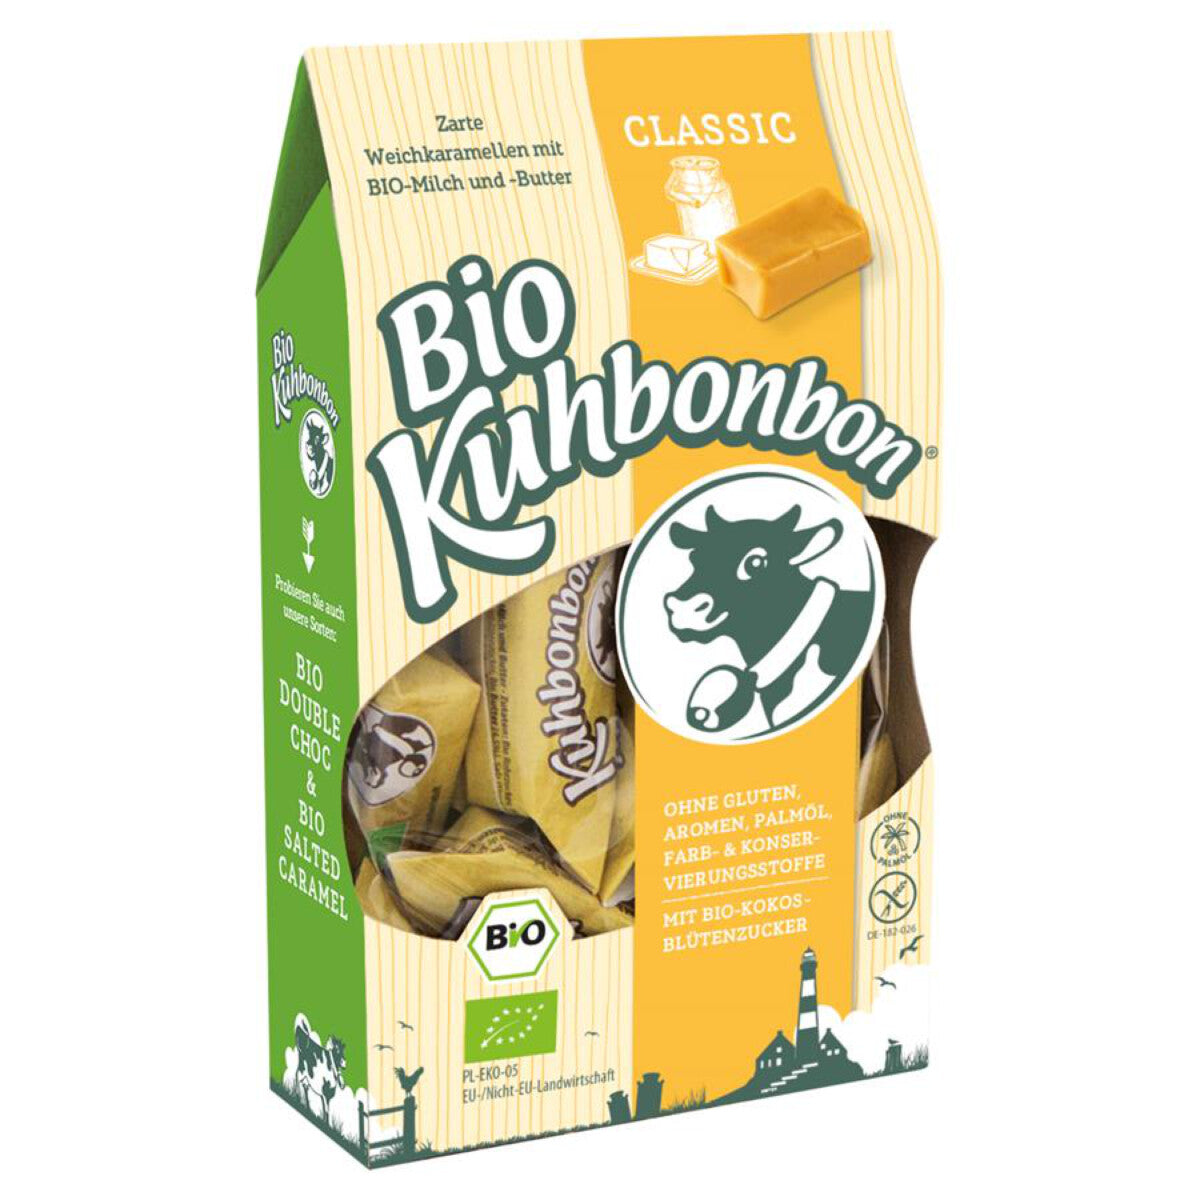 KUHBONBON Kuhbonbon classic - 105 g